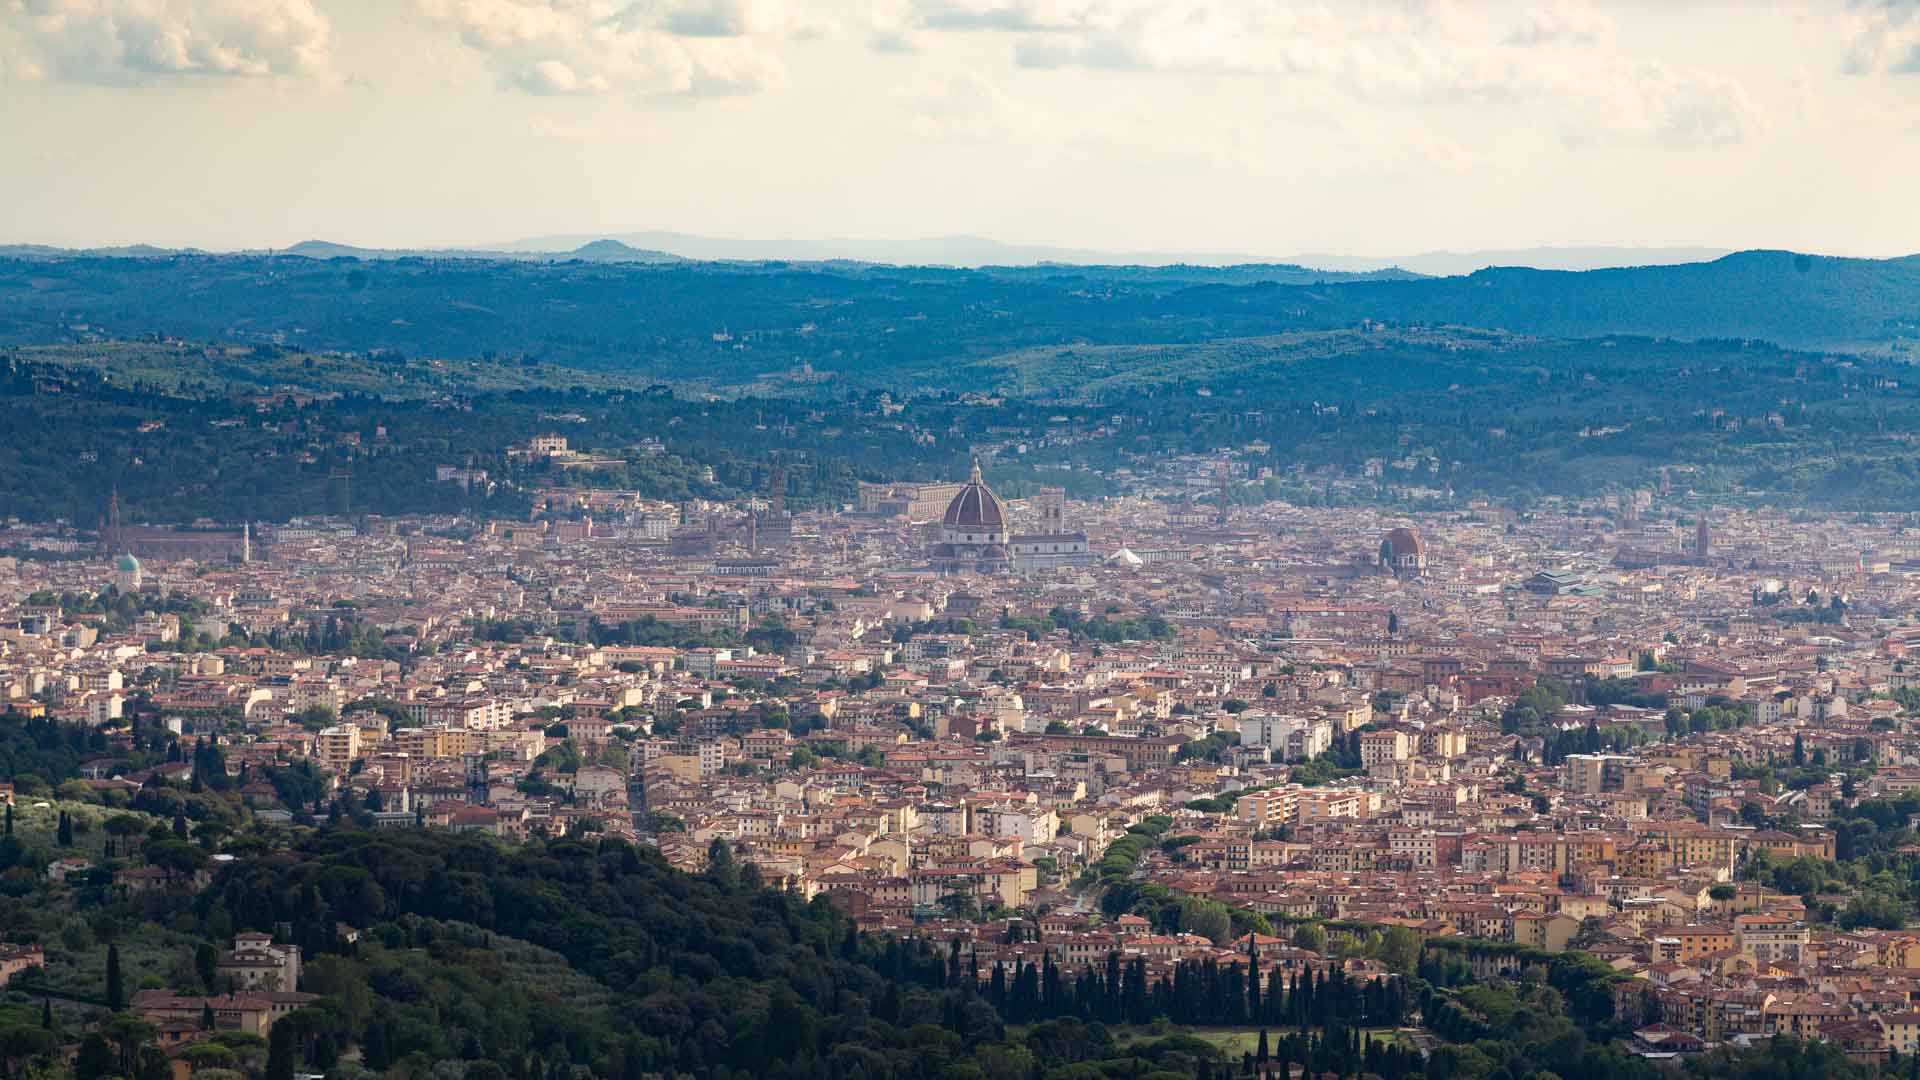 Italian city skyline from a nearby hillside